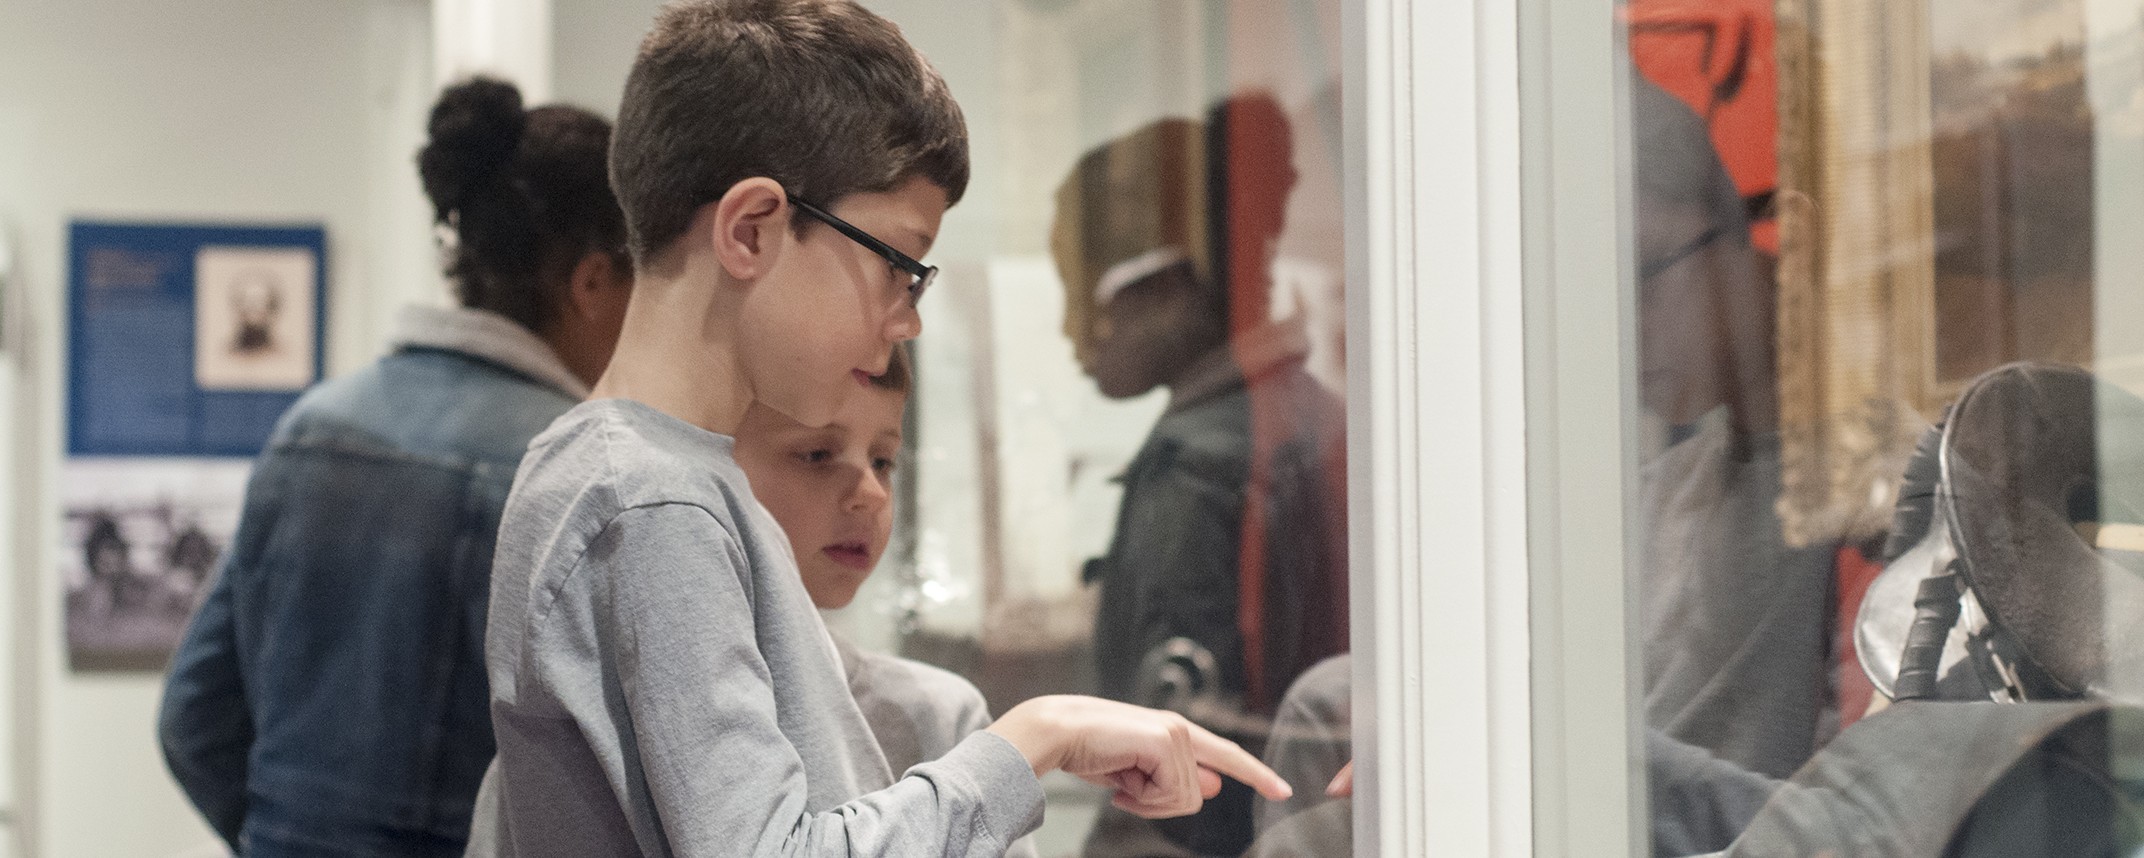 children looking at exhibit